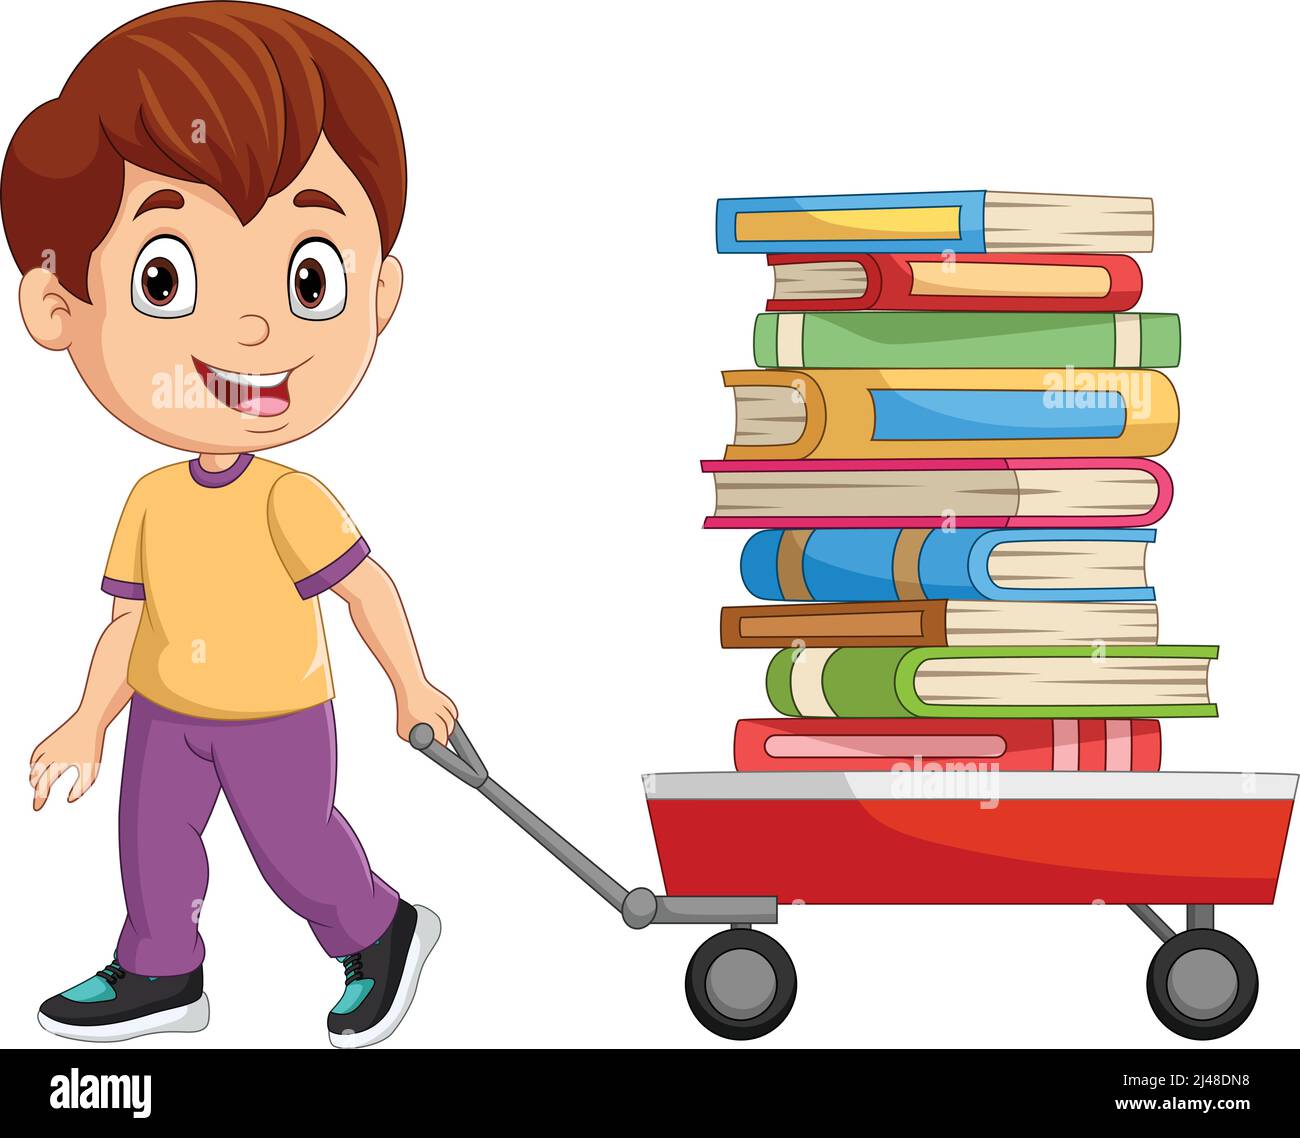 Cartoon kleiner Junge Zug Waggon Wagen mit Stapel von Büchern Stock Vektor